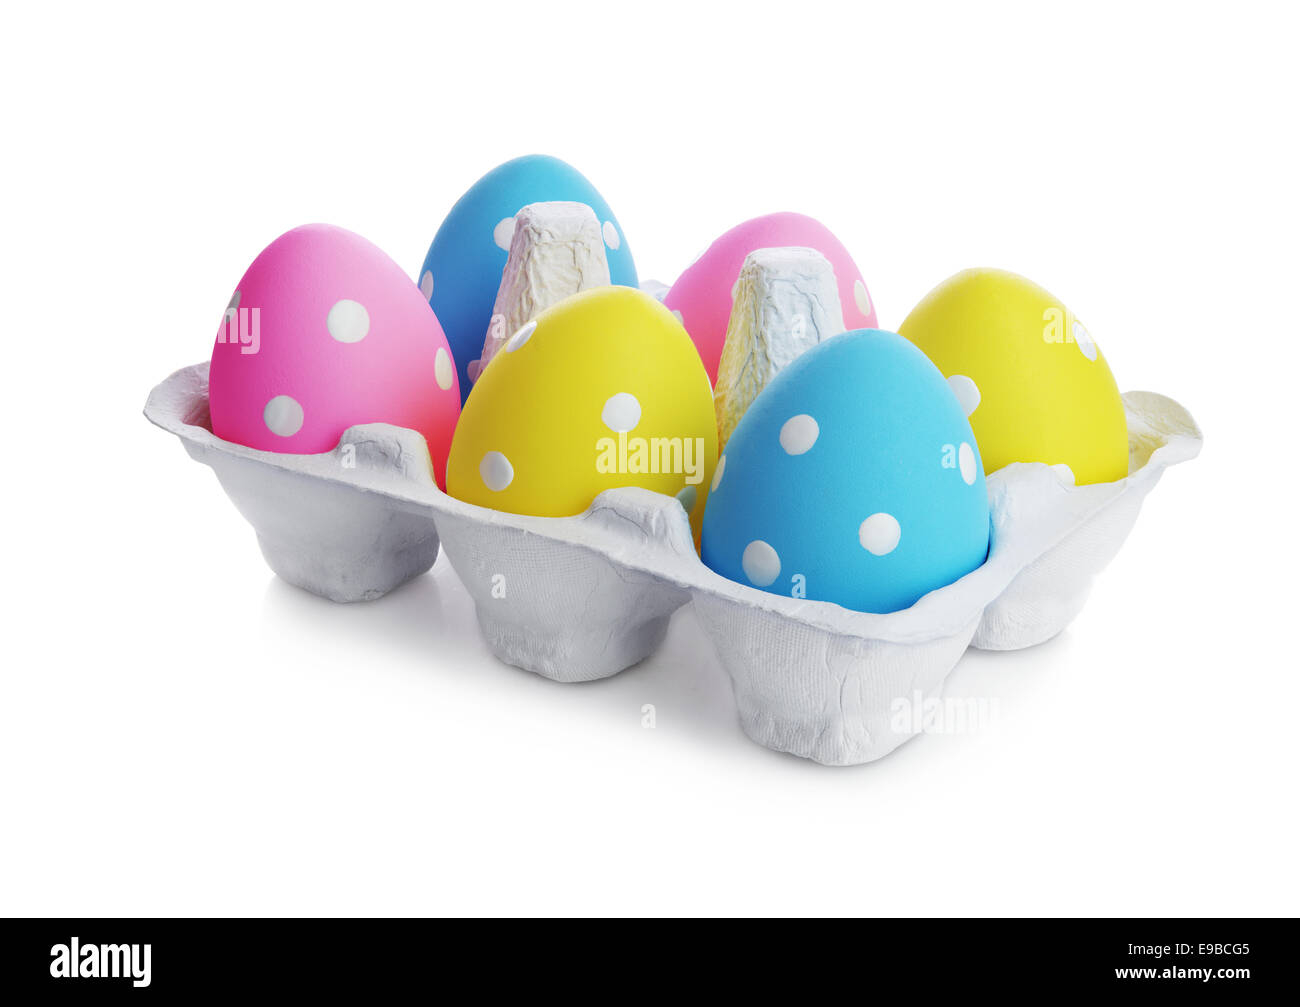 Multicolore di uova di Pasqua in scatola di cartone isolati su sfondo bianco Foto Stock